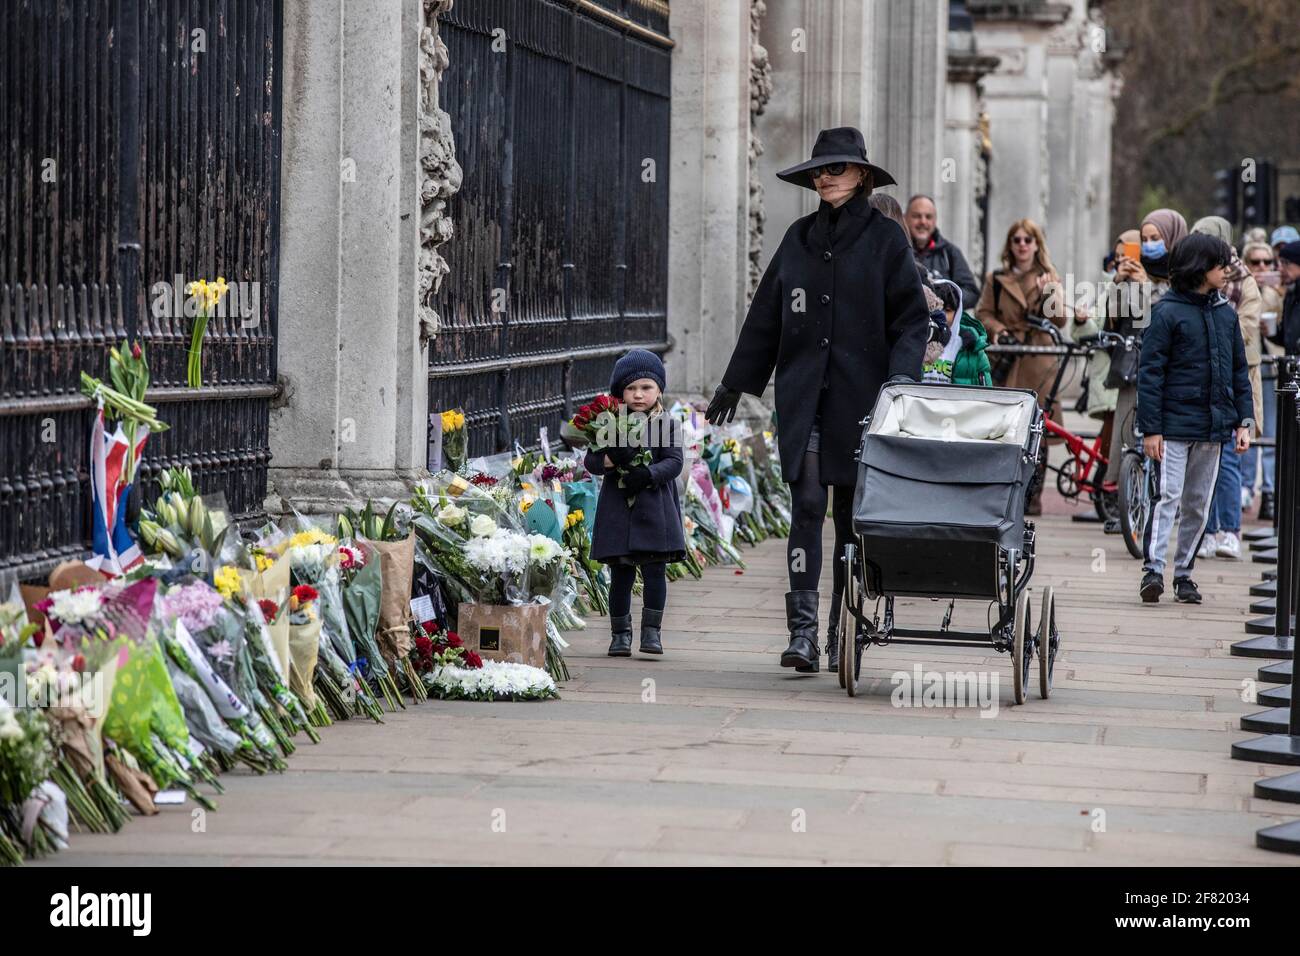 Brunner legen Blumen, um vor dem Buckingham Palace ihre Achtung für den Herzog von Edinburgh zu zeigen, nachdem der Palast am Freitag, London, Großbritannien, seinen Tod bekannt gegeben hat. Quelle: Jeff Gilbert/Alamy Live News Stockfoto